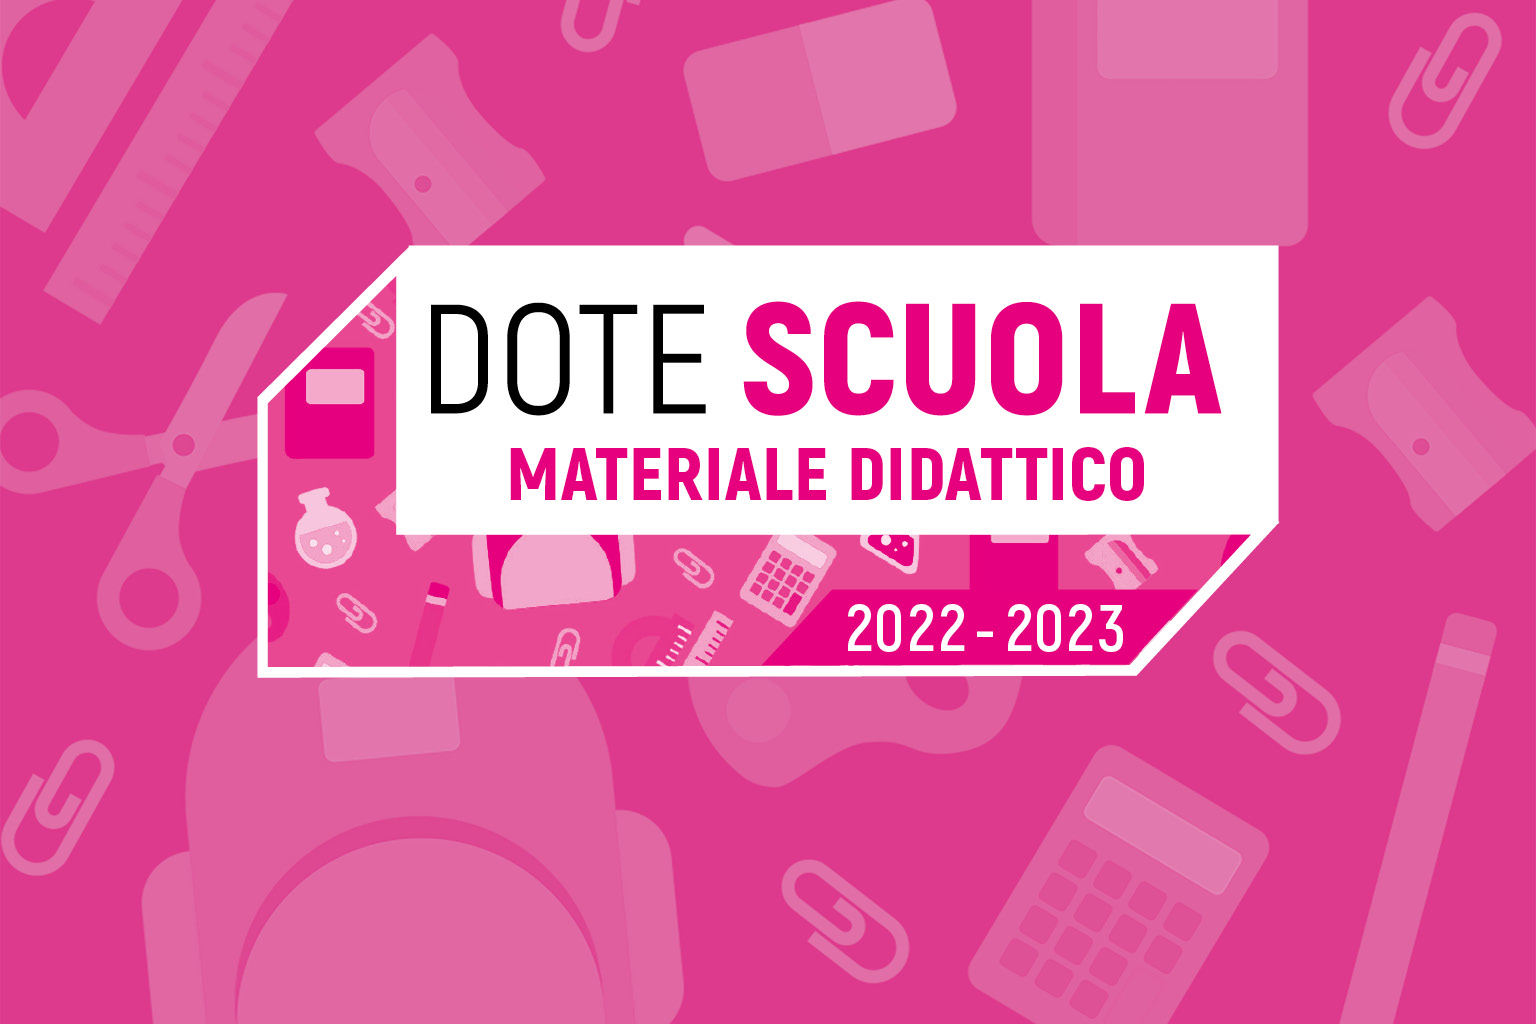 DOTE SCUOLA REGIONE LOMBARDIA 2022/2023